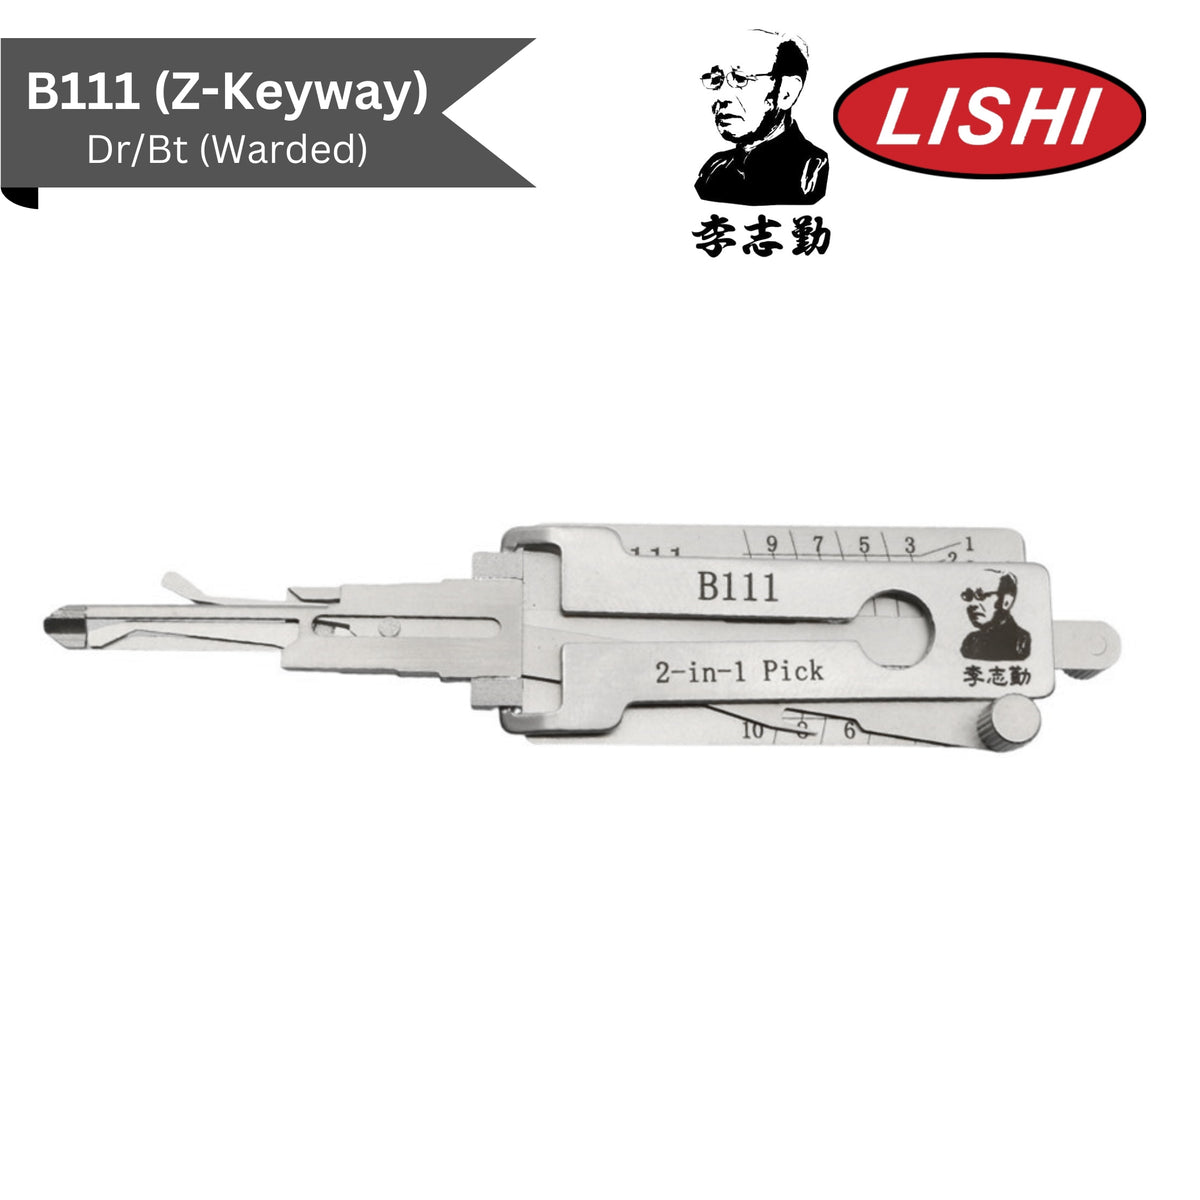 Original Lishi - GM B111 Z-Keyway Warded (Dr/Bt) - 2-In-1 Pick/Decoder - AG